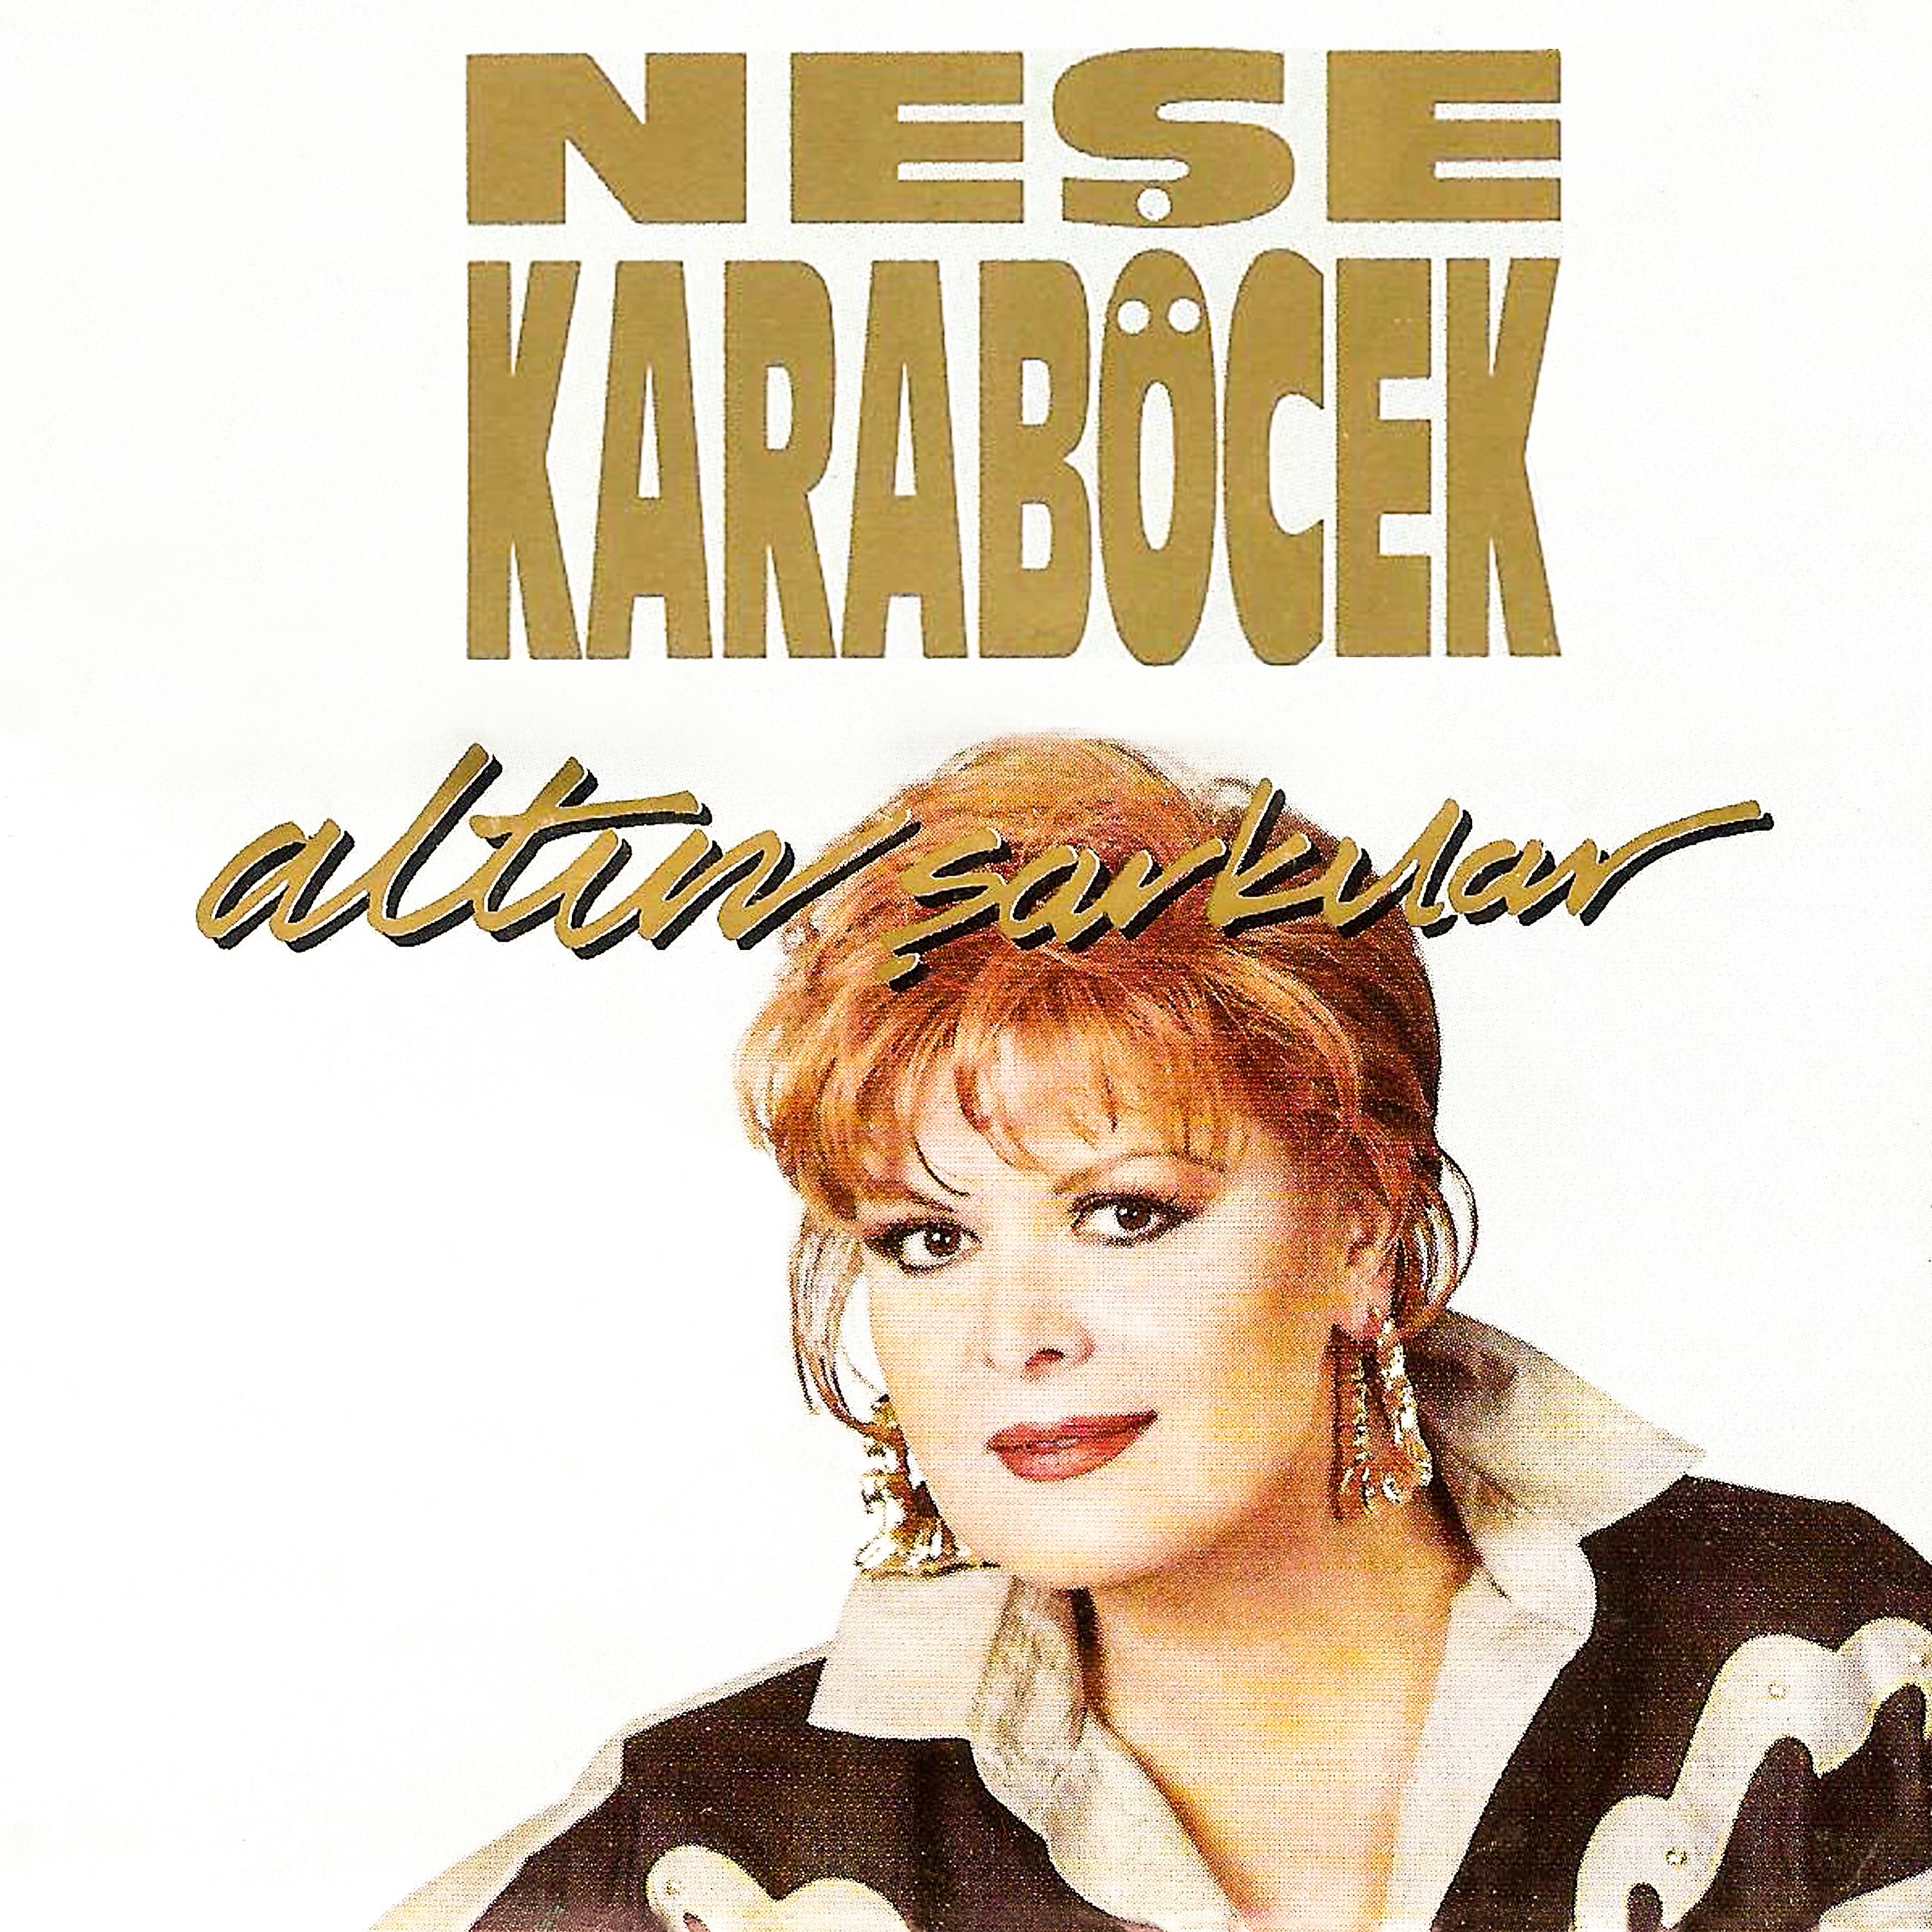 Постер альбома Altın Şarkılar